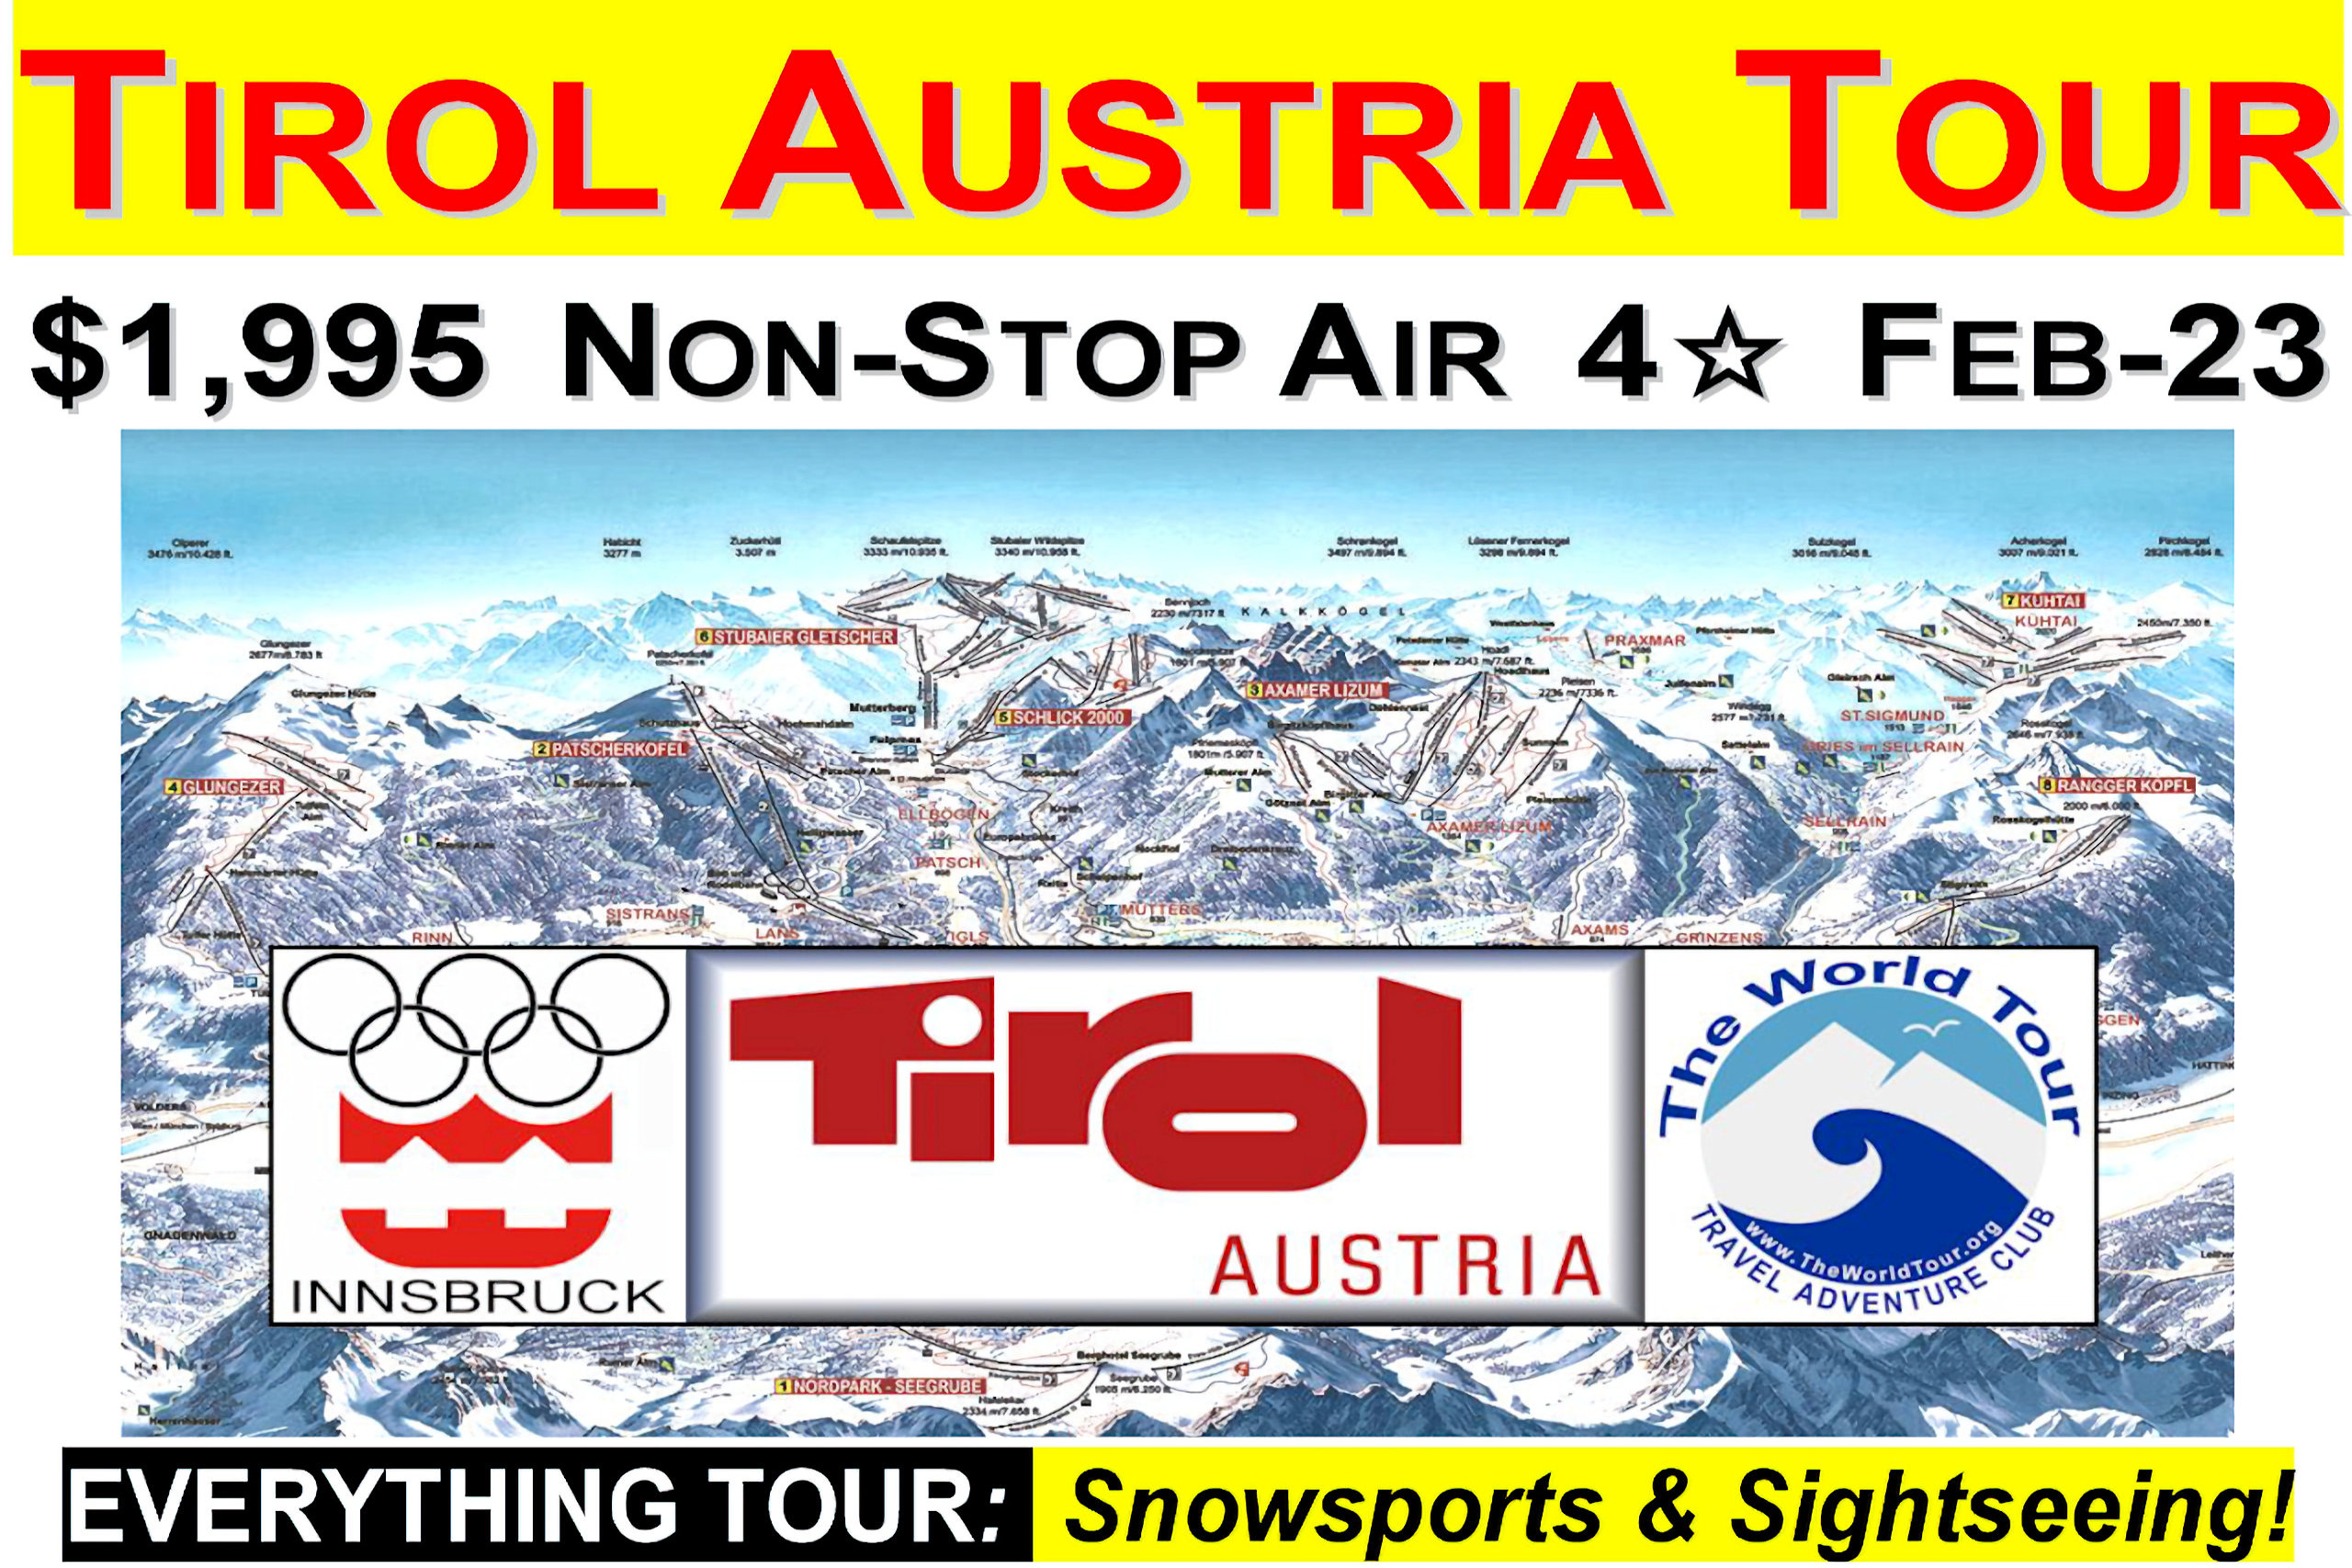 Tirol Austria Tour: Feb. 18-26: $1,995 Sightseeing & Snowsports Tour